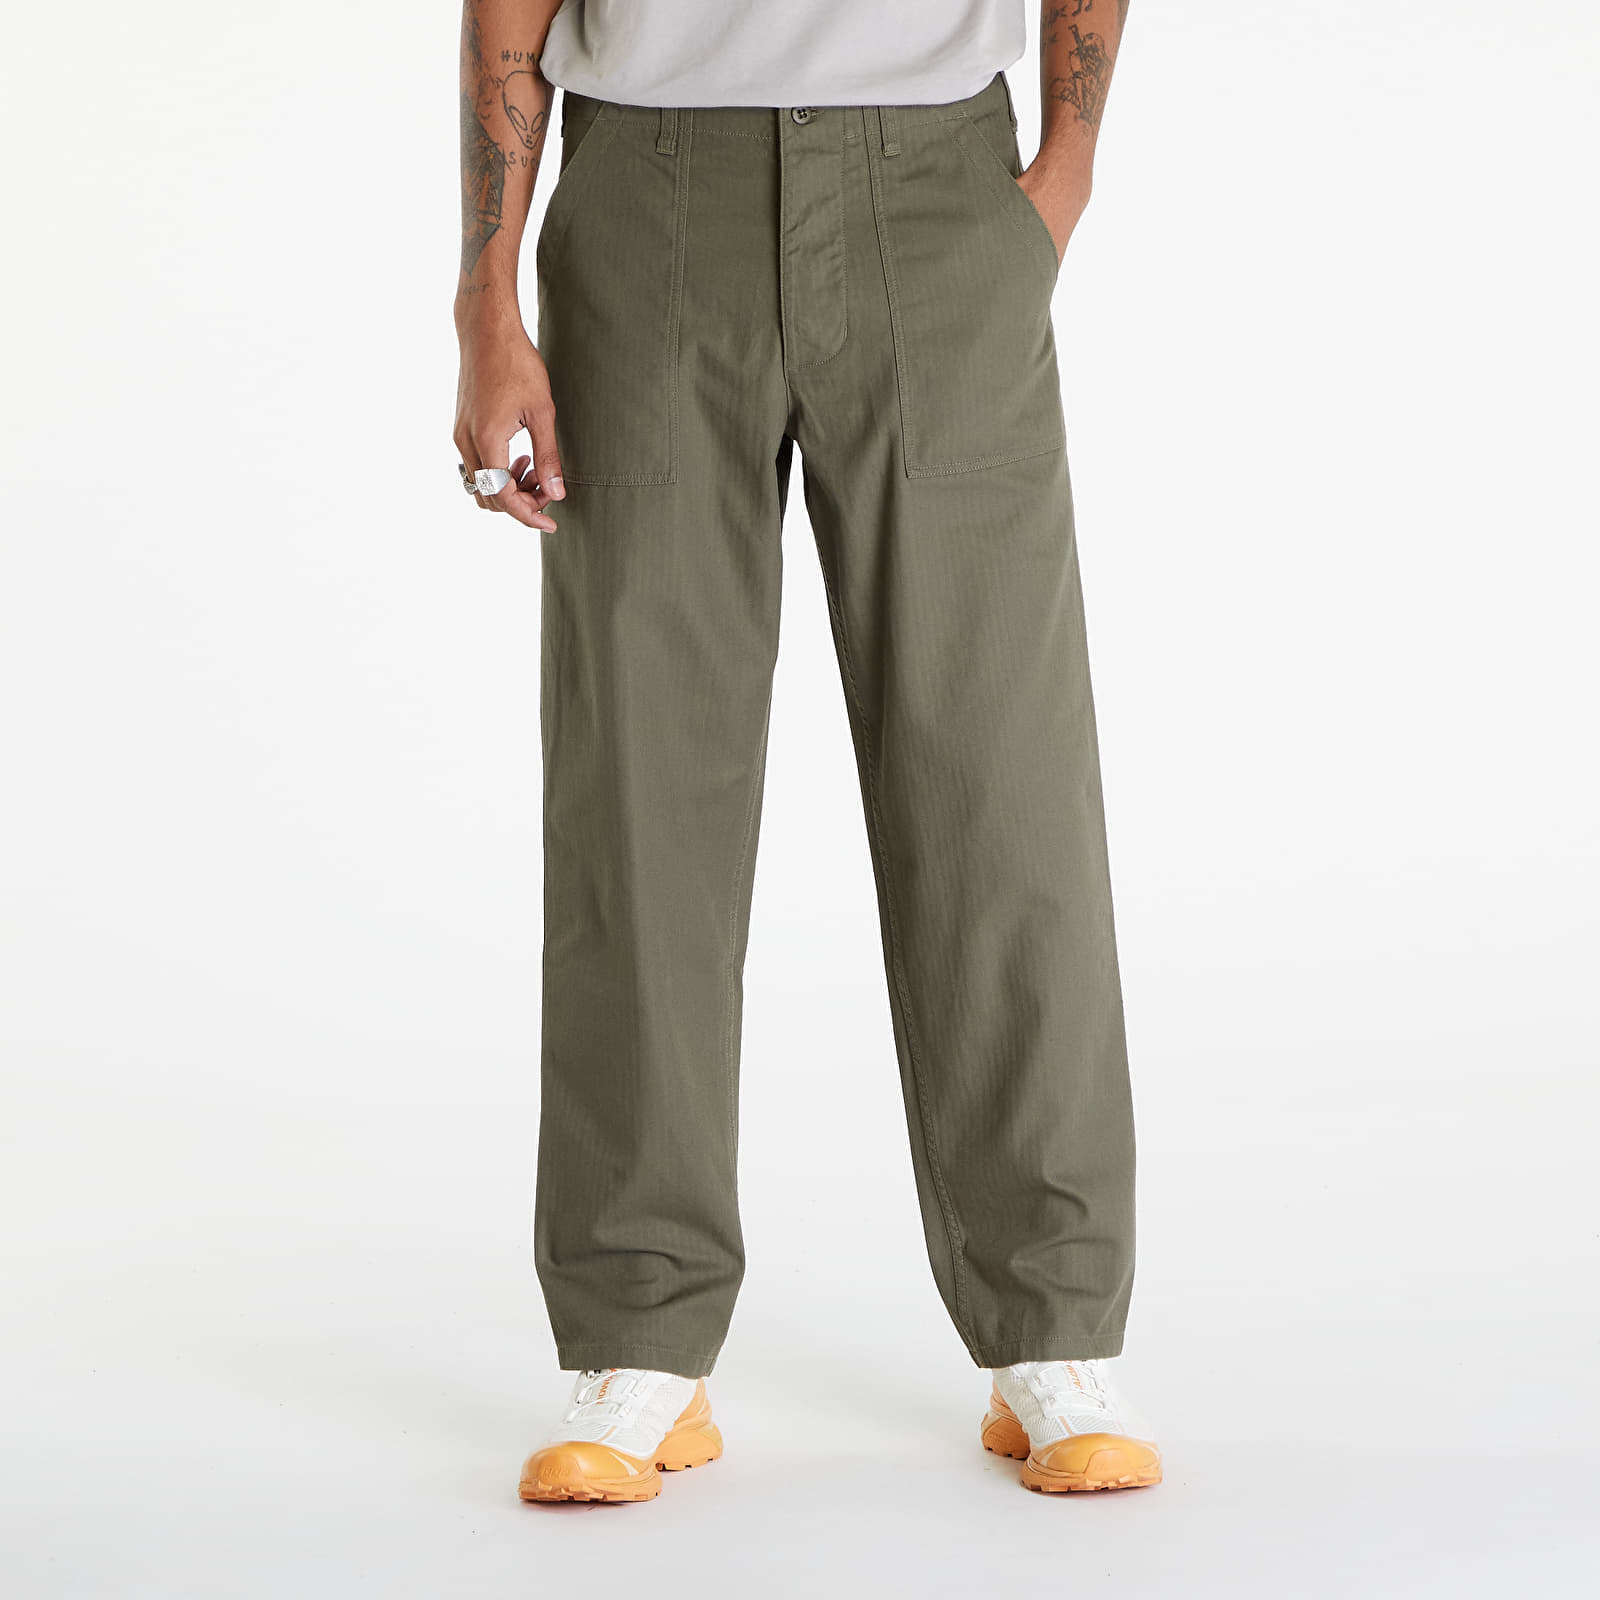 Дънки и панталони Nike Life Men’s Fatigue Pants Medium Olive/ Medium Olive